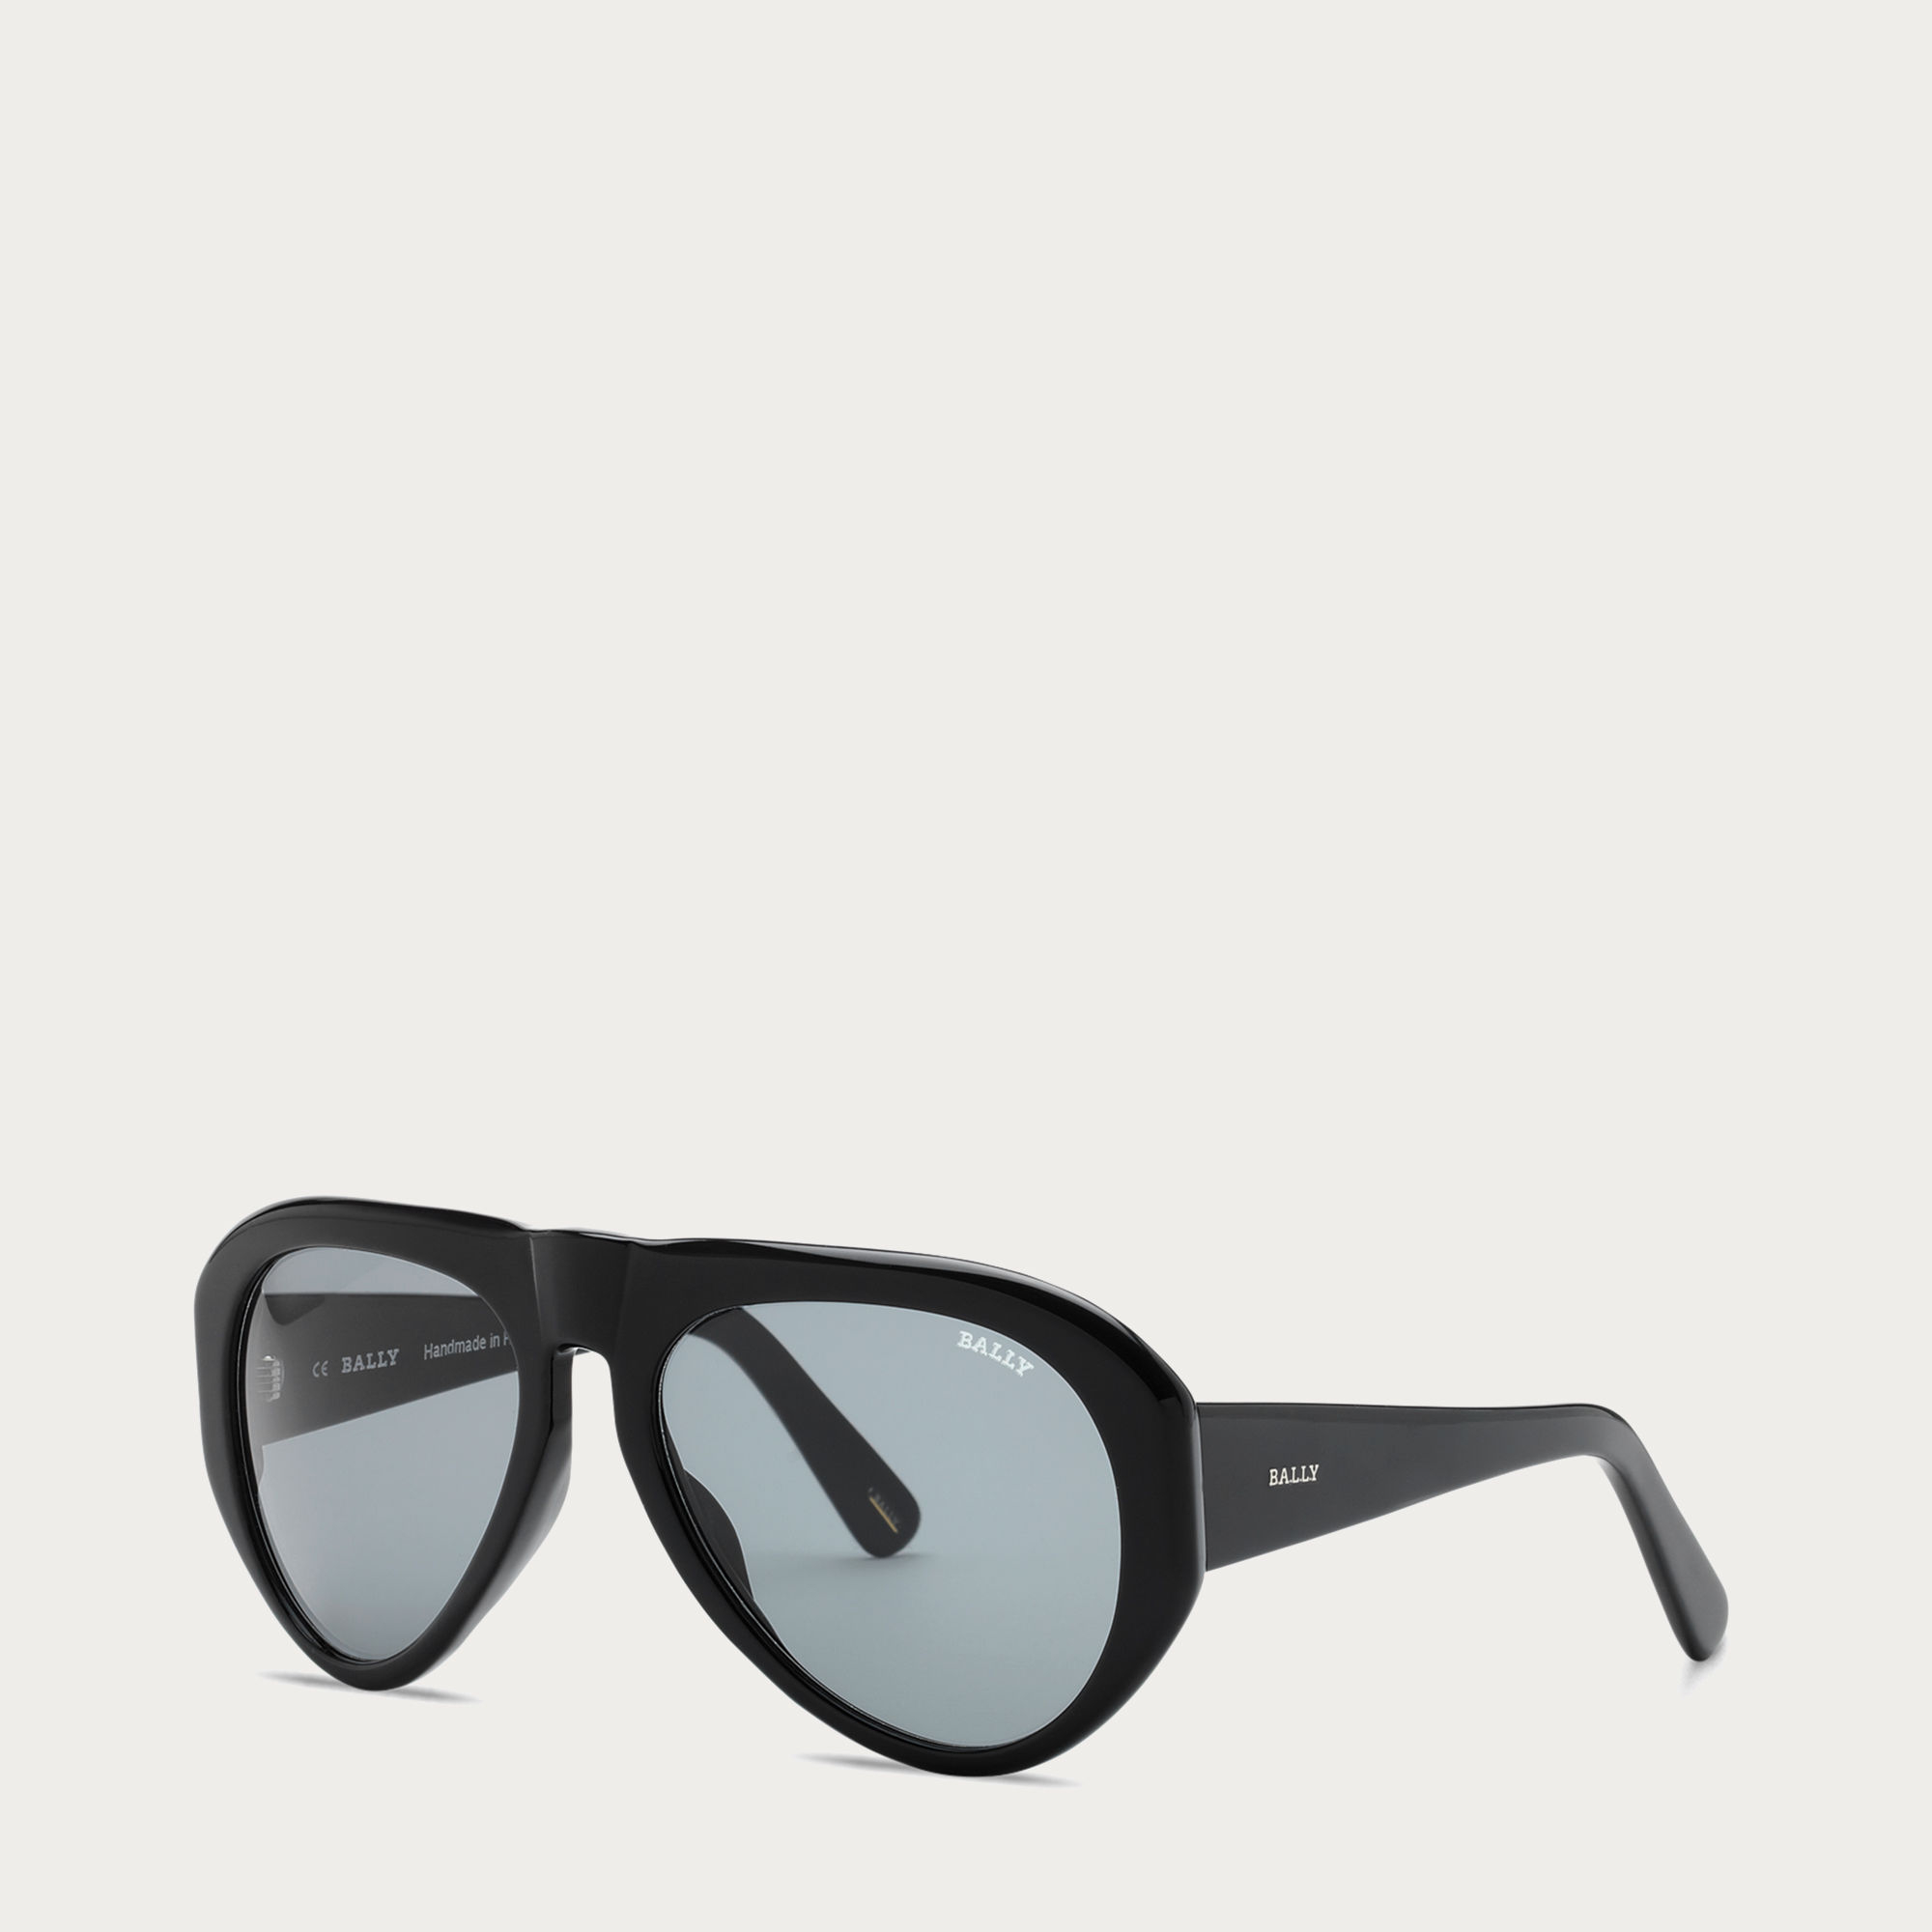 Lyst - Bally Aviator Sunglasses in Black for Men